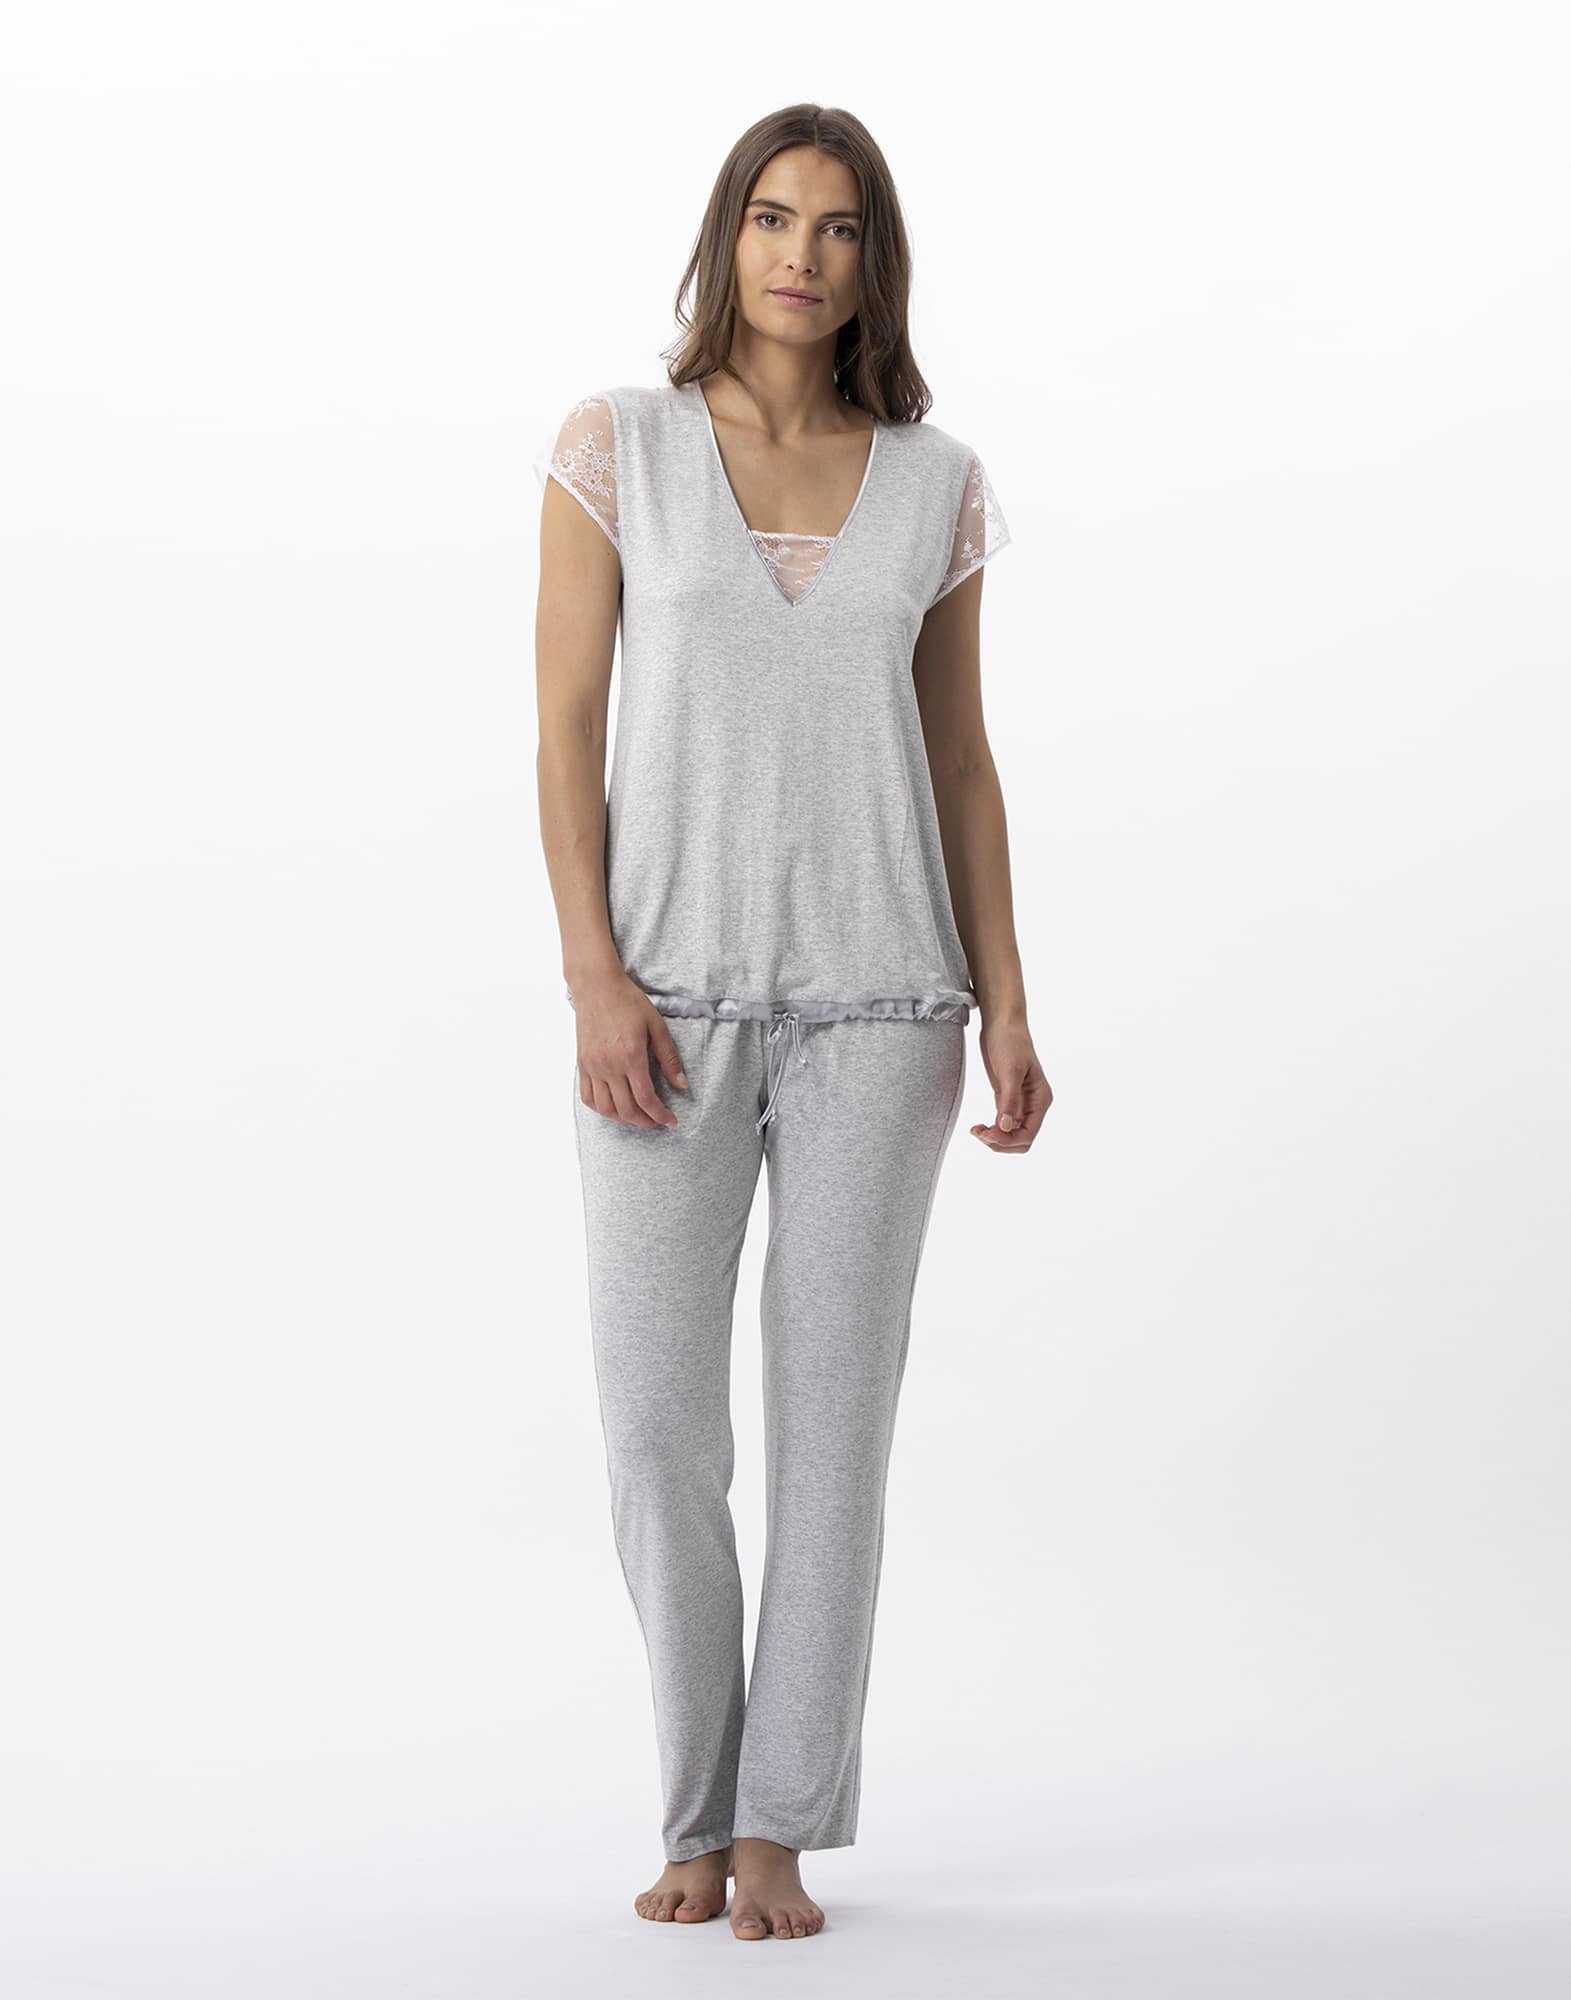 Pyjama en jersey et dentelle ANNAH 702 gris chiné   | Lingerie le Chat